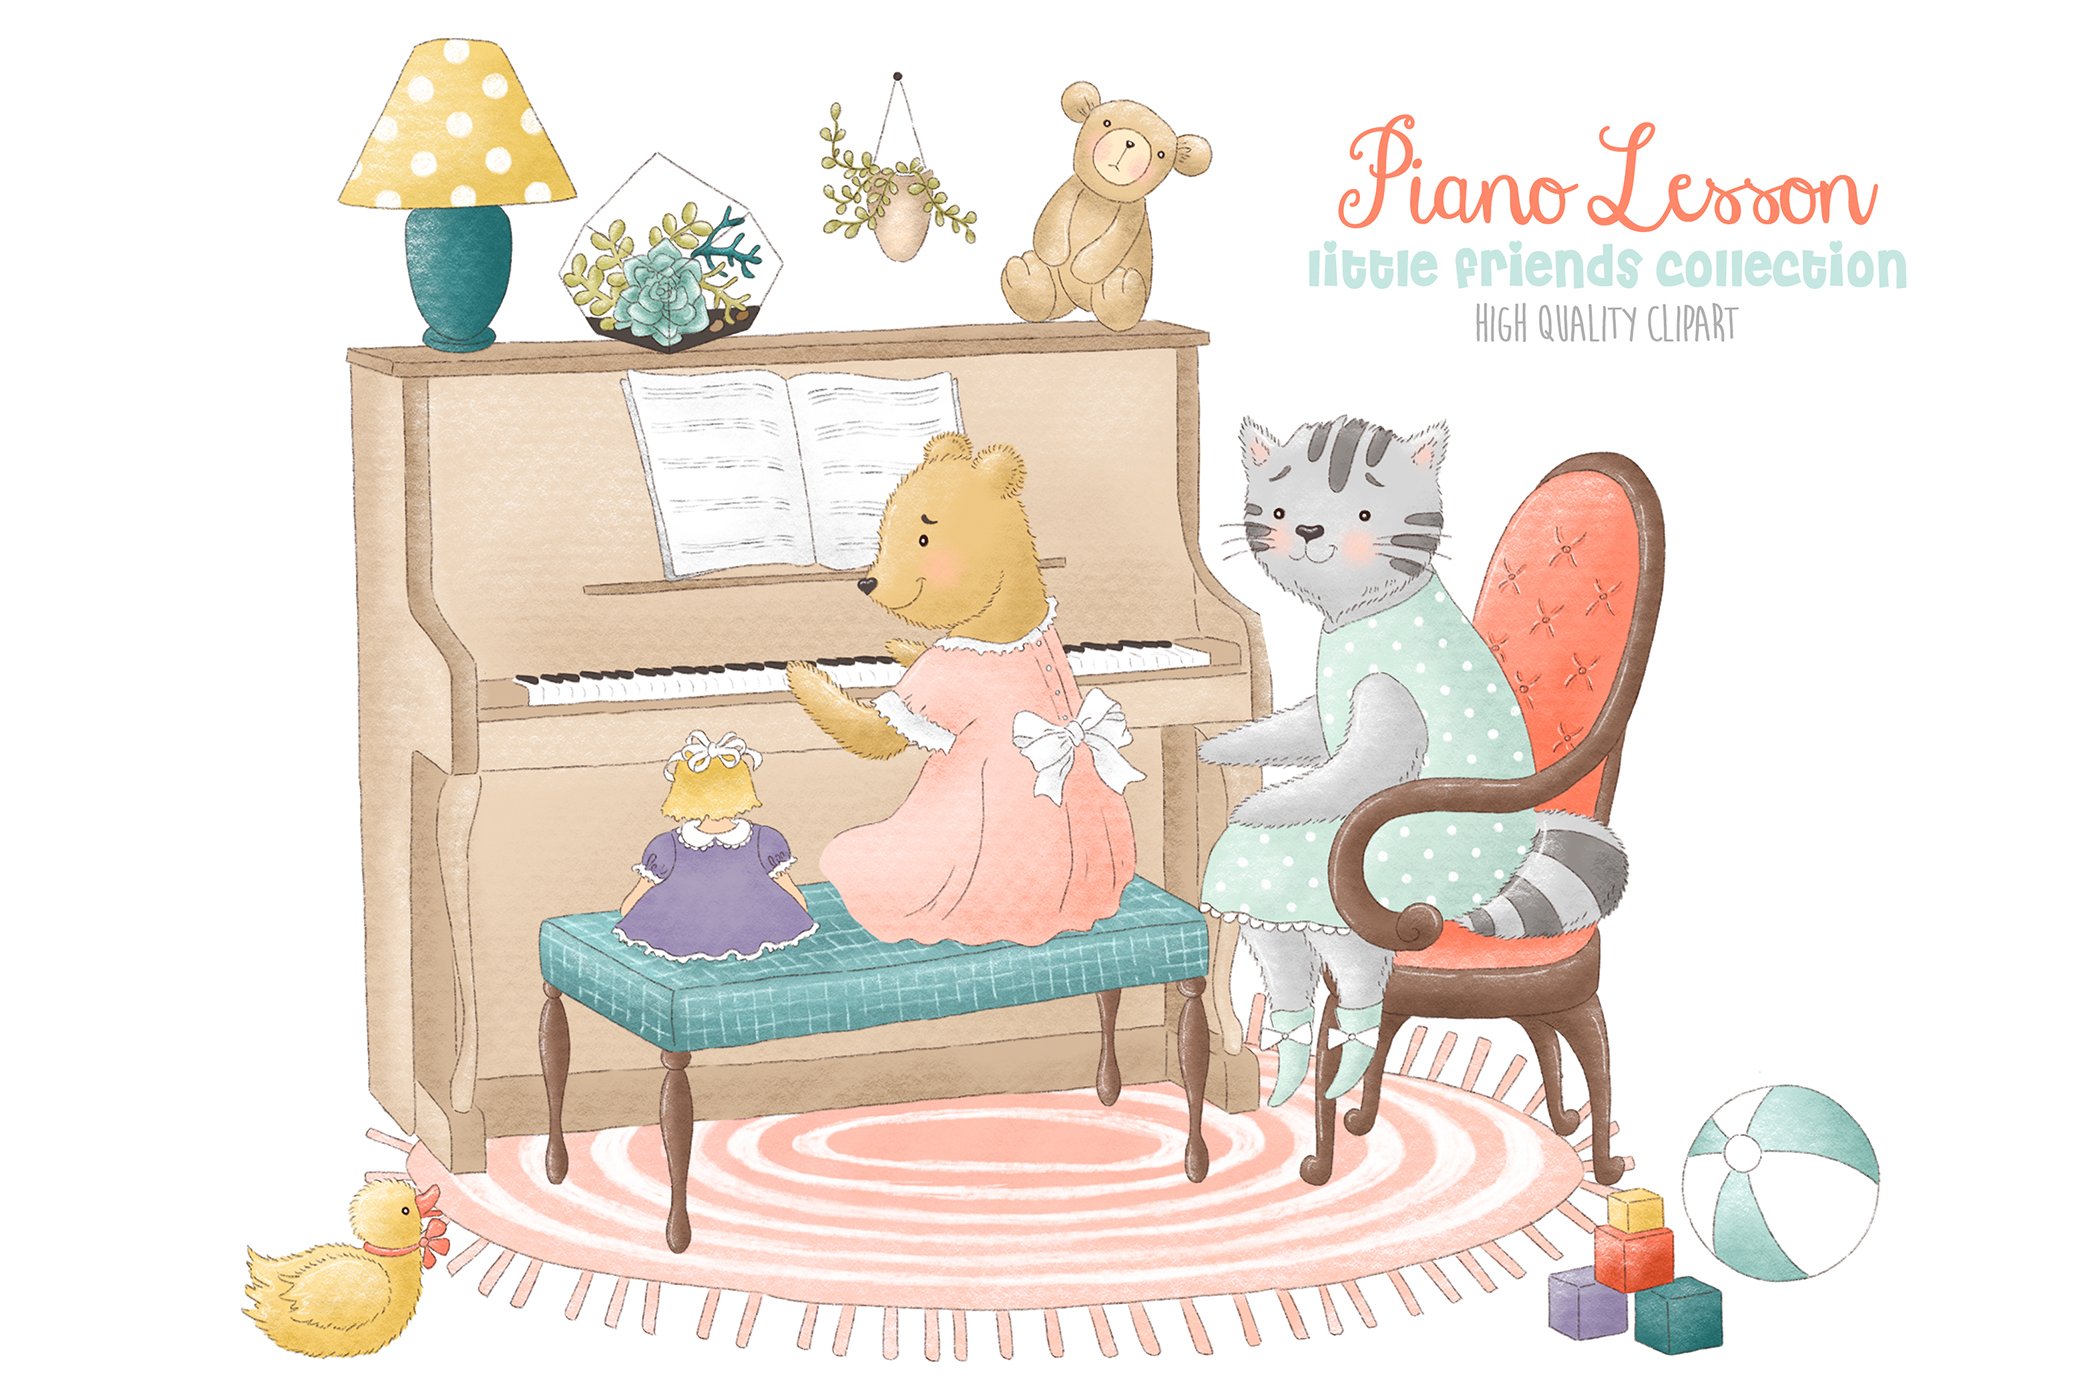 Piano lesson clipart cover image.